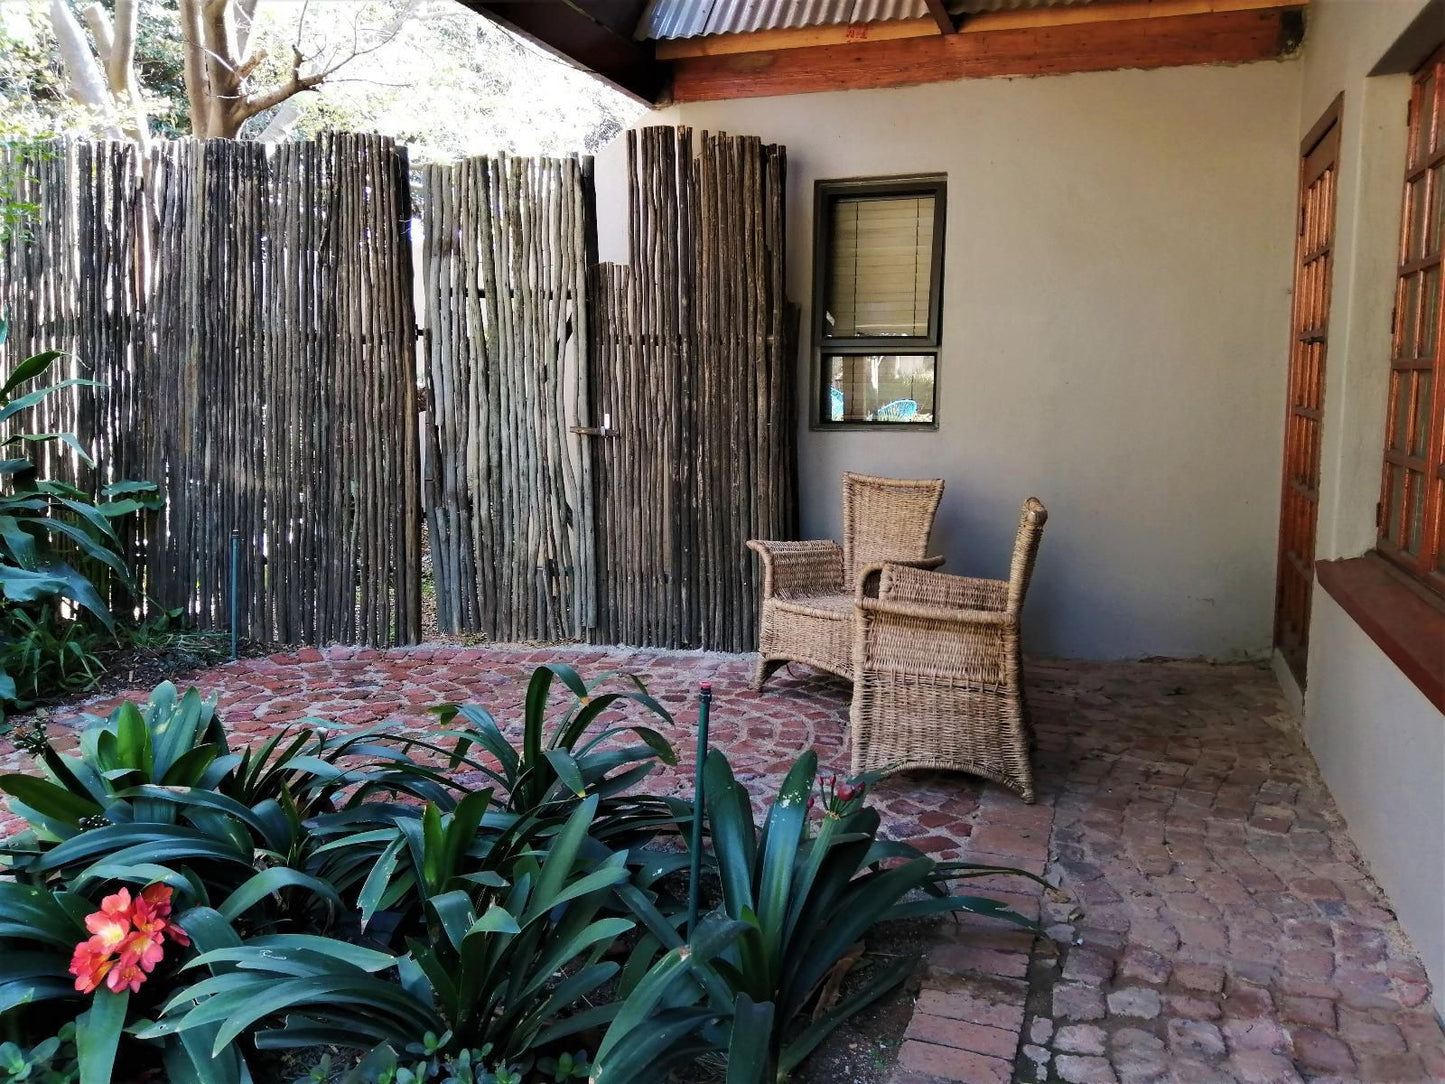 Ikamu S Lodge Verwoerd Park Johannesburg Gauteng South Africa Plant, Nature, Garden